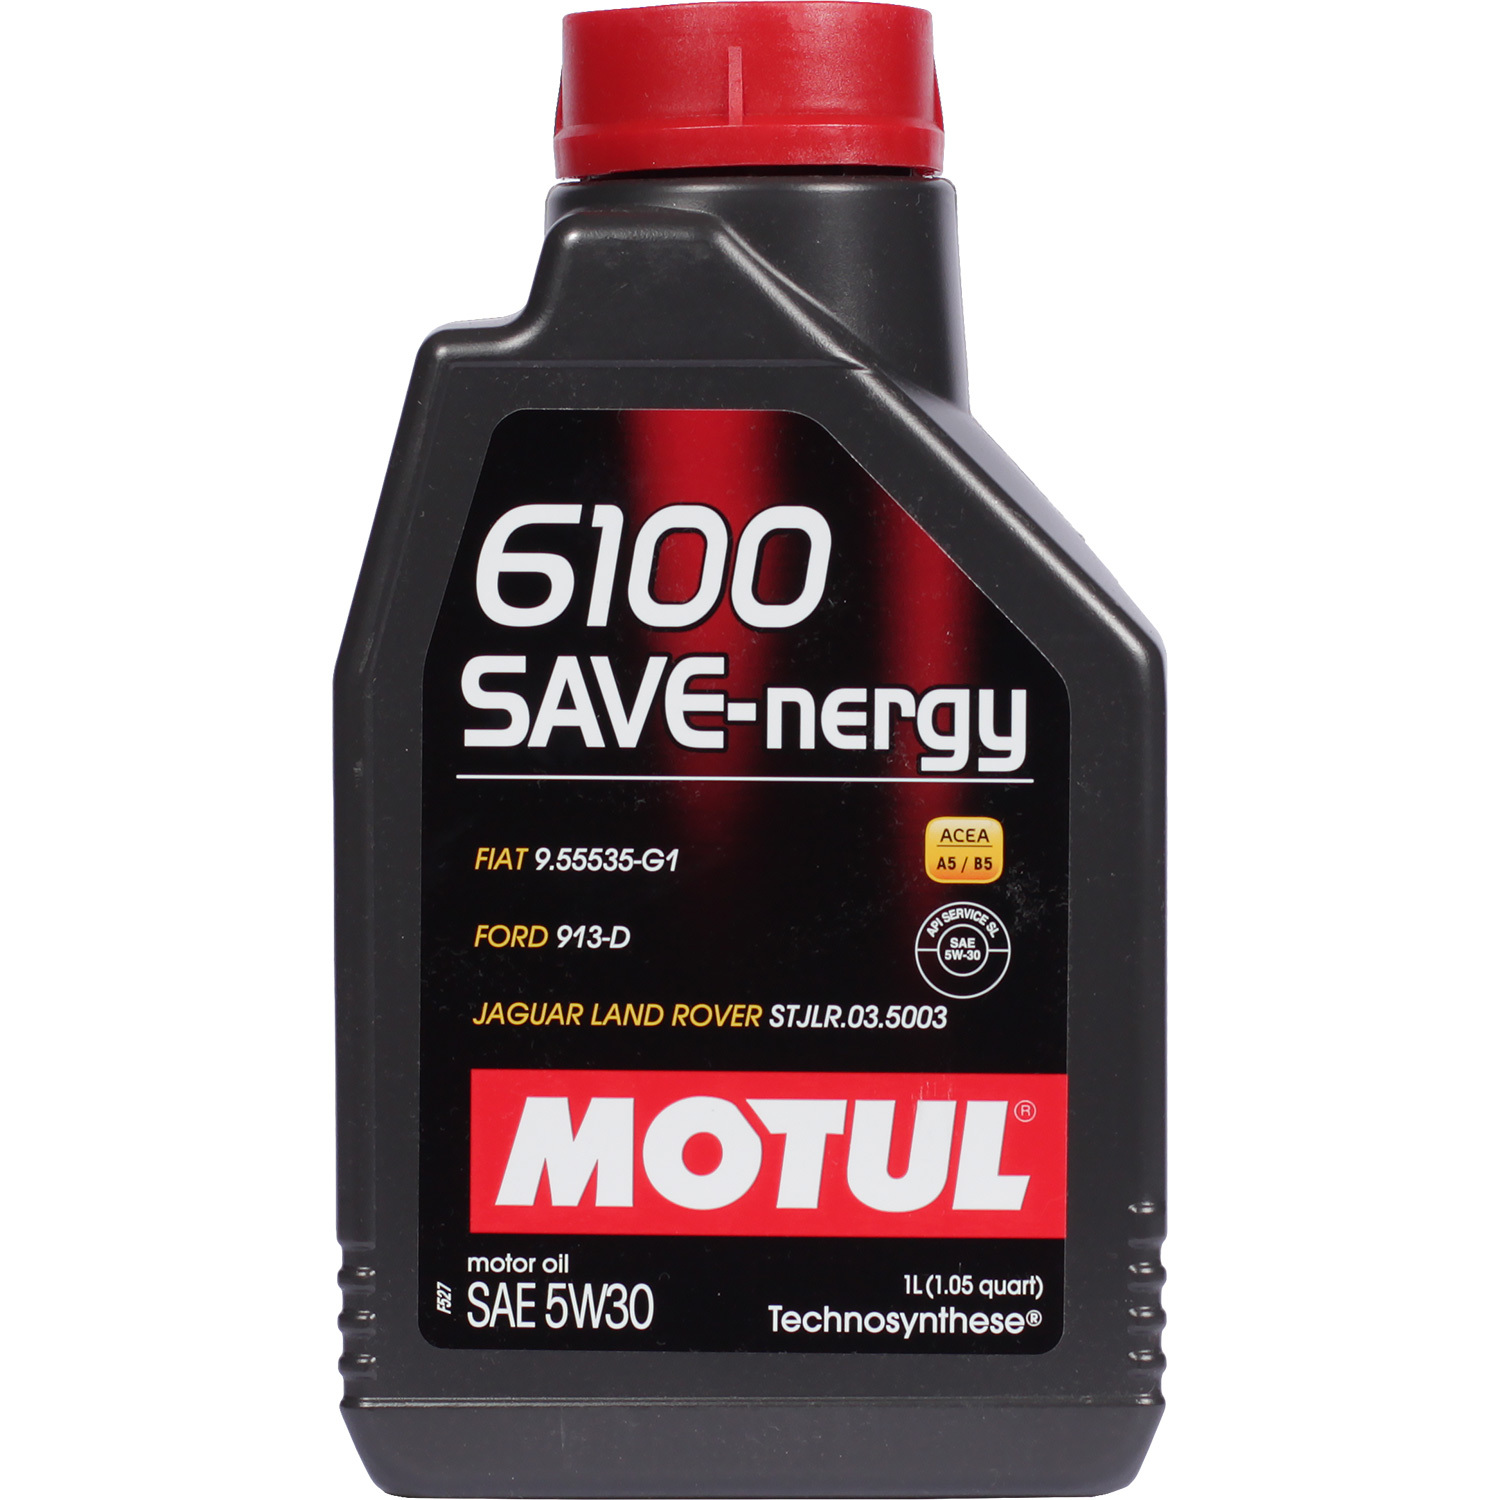 Motul Моторное масло Motul 6100 SAVE-NERGY 5W-30, 1 л motul моторное масло motul 8100 eco nergy 5w 30 4 л